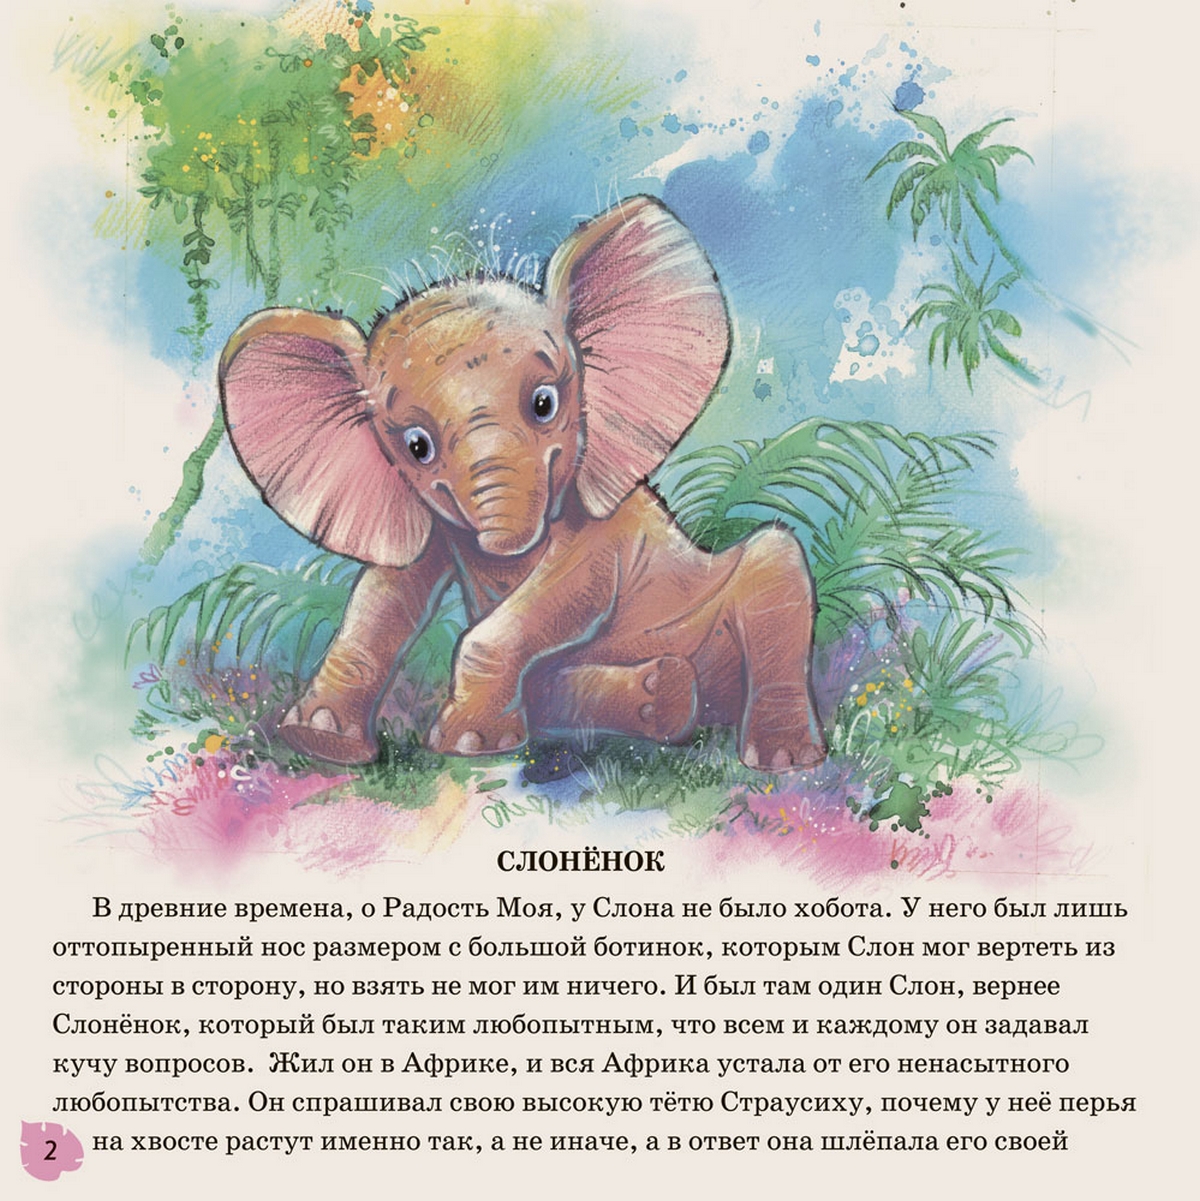 Слоник сказка. Книжка Киплинга Слоненок. Киплинг Редьярд "слонёнок". Сказка Слоненок Киплинг.